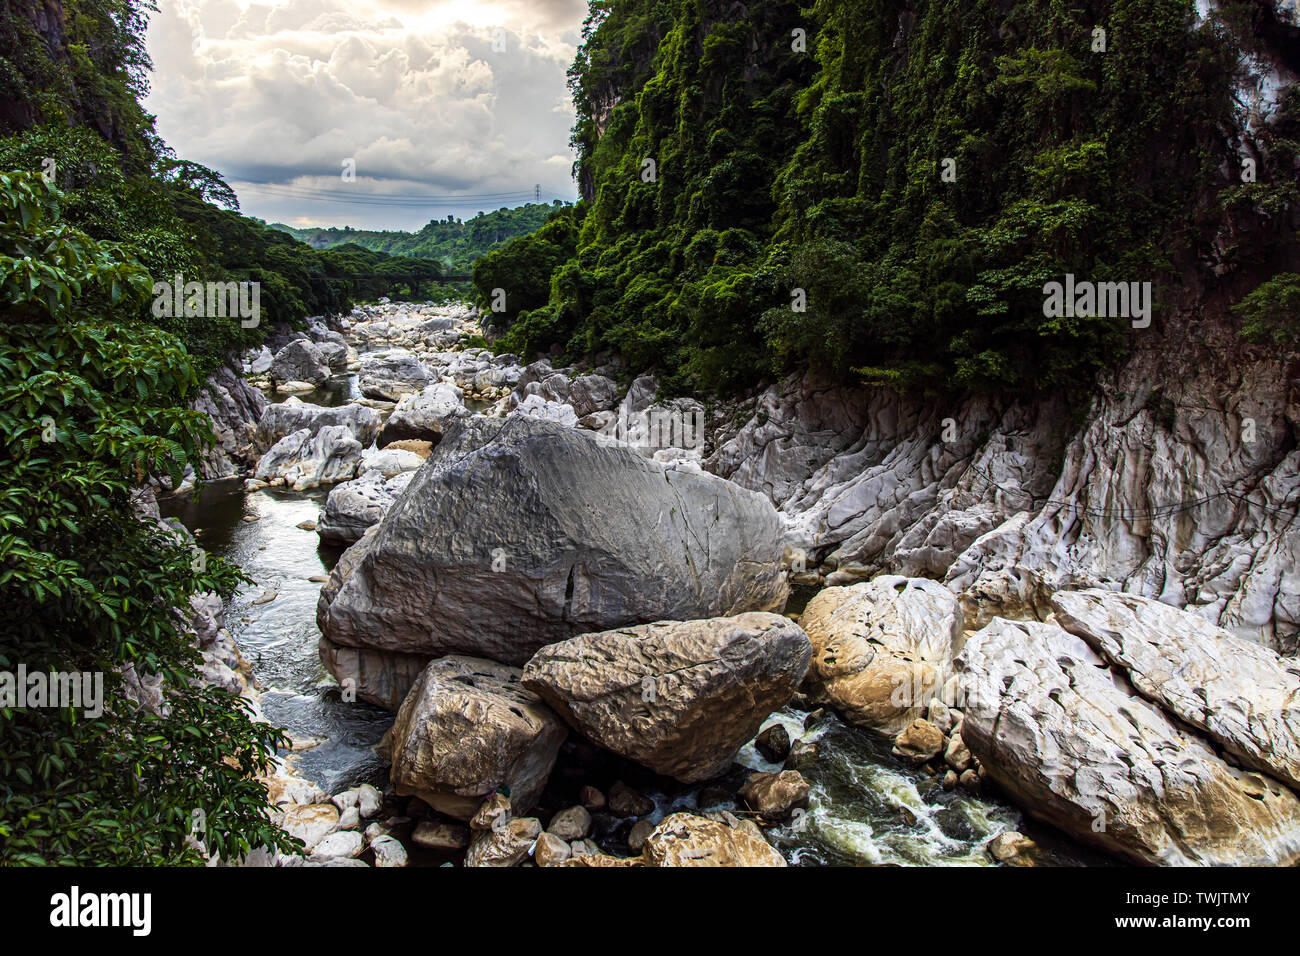 beautiful landscape at wawa dam at Rizal Province, Philippines Stock Photo